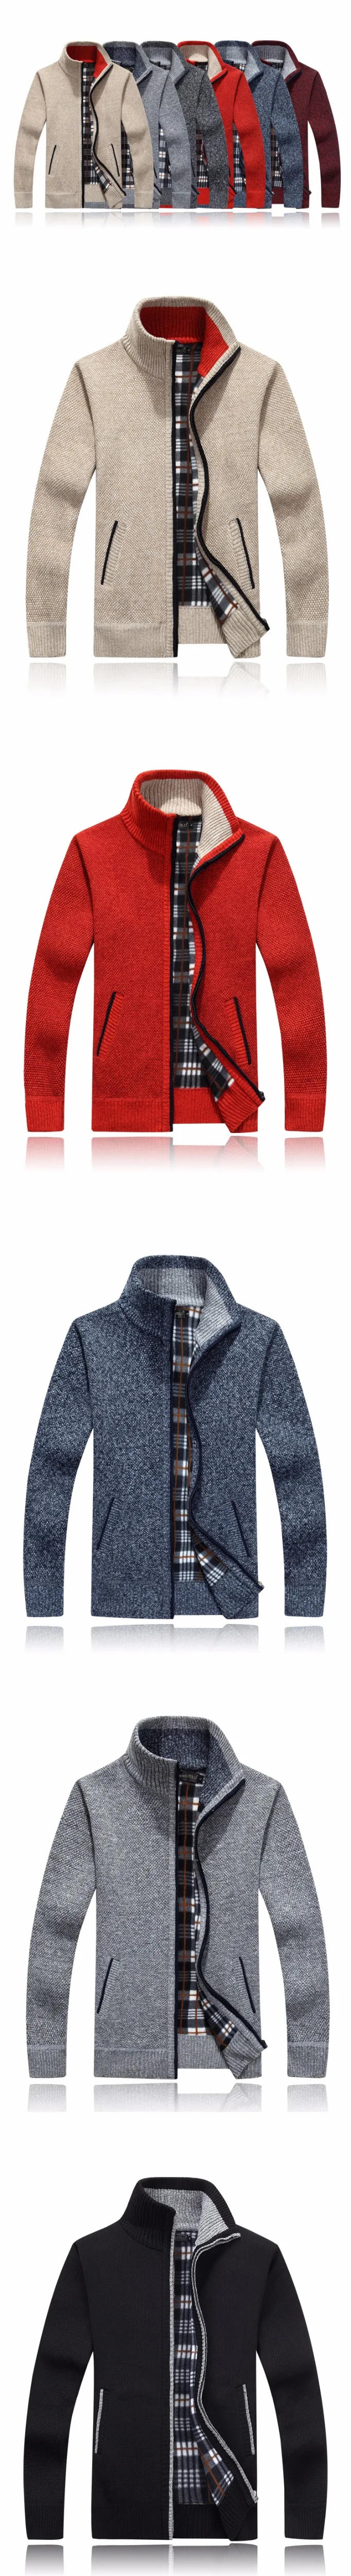 Мужские свитера осень зима теплый кашемировый шерстяной пуловер на молнии свитера мужские повседневные вязаные свитера размера плюс M-XXXL